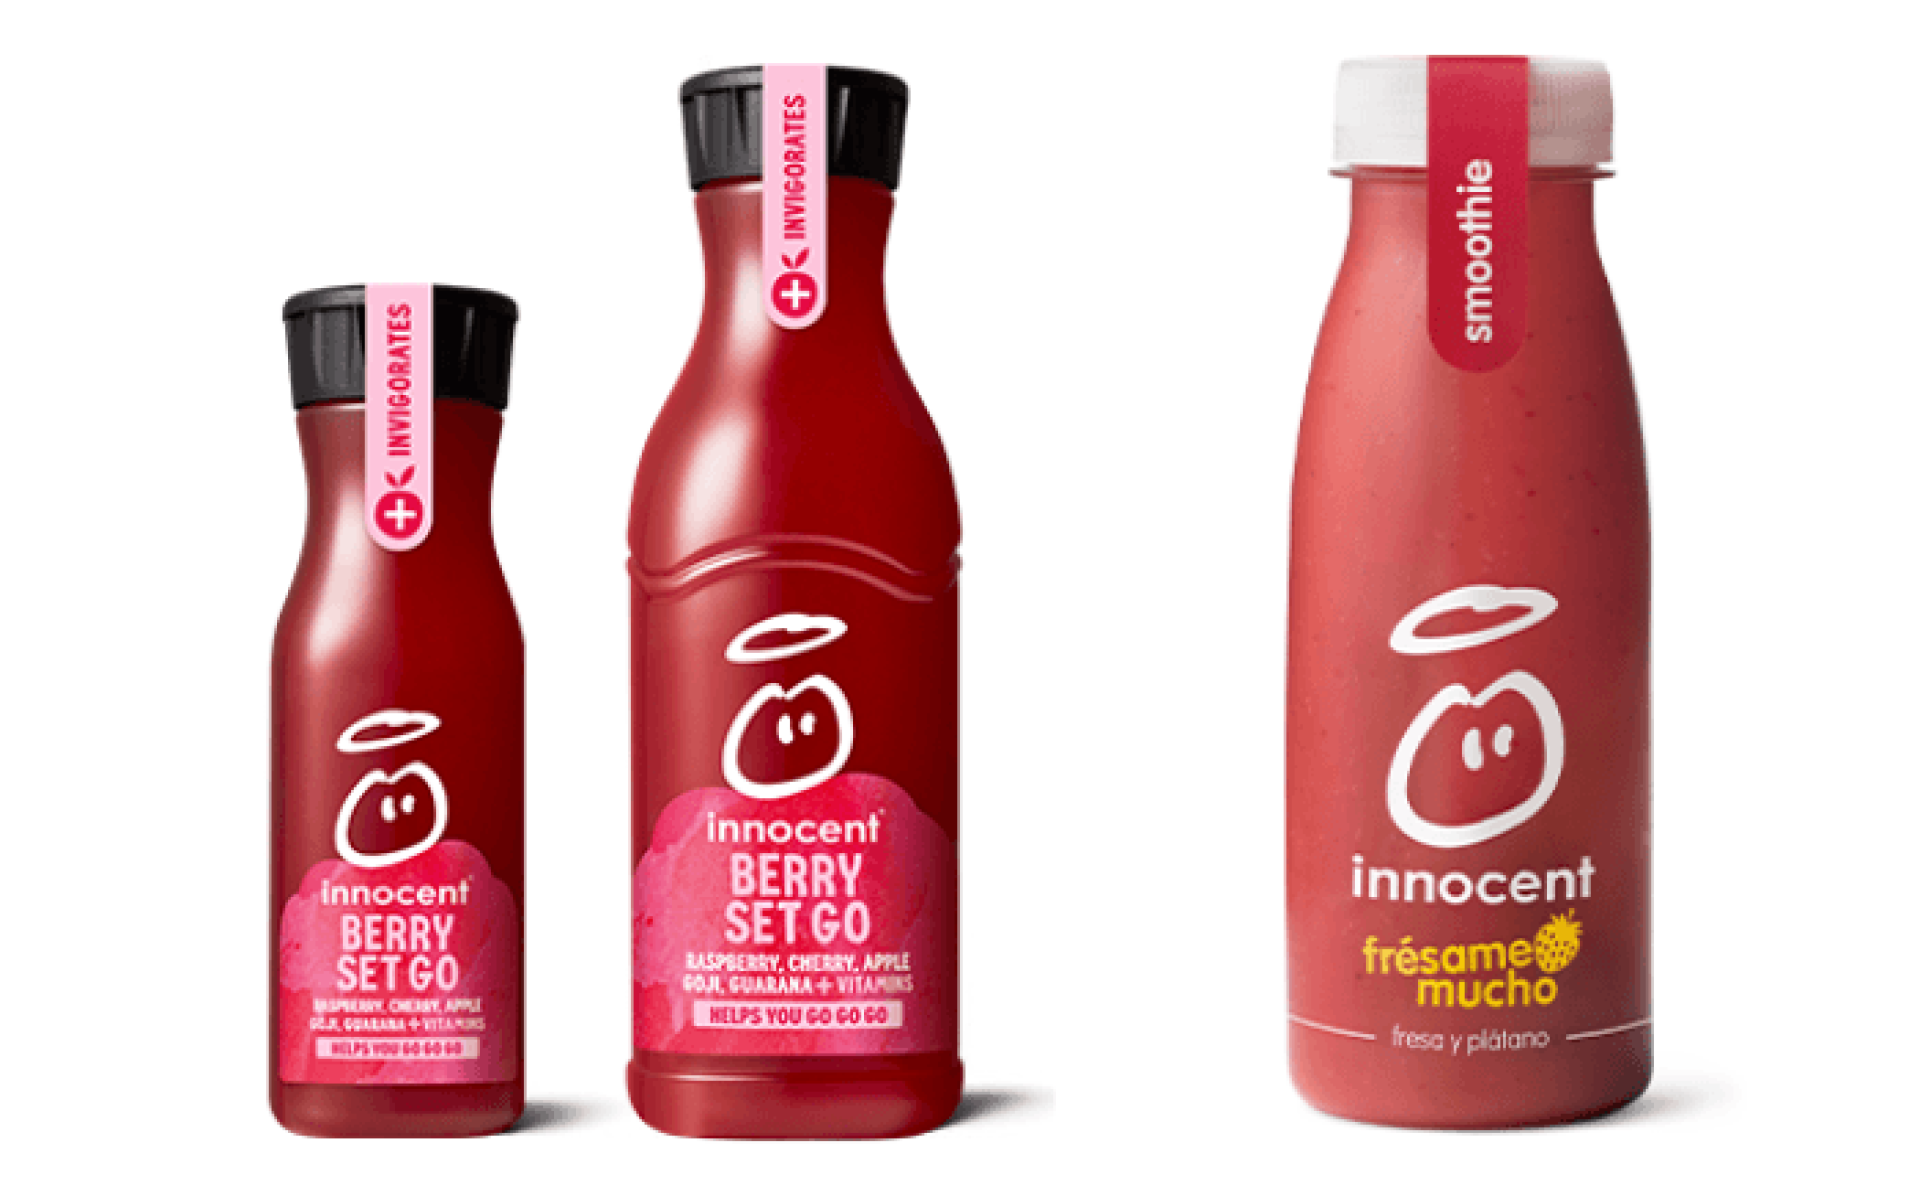 Imagen de uno de los zumos de la marca Innocent: el del lado izquierdo para consumidores de habla inglesa con el nombre 